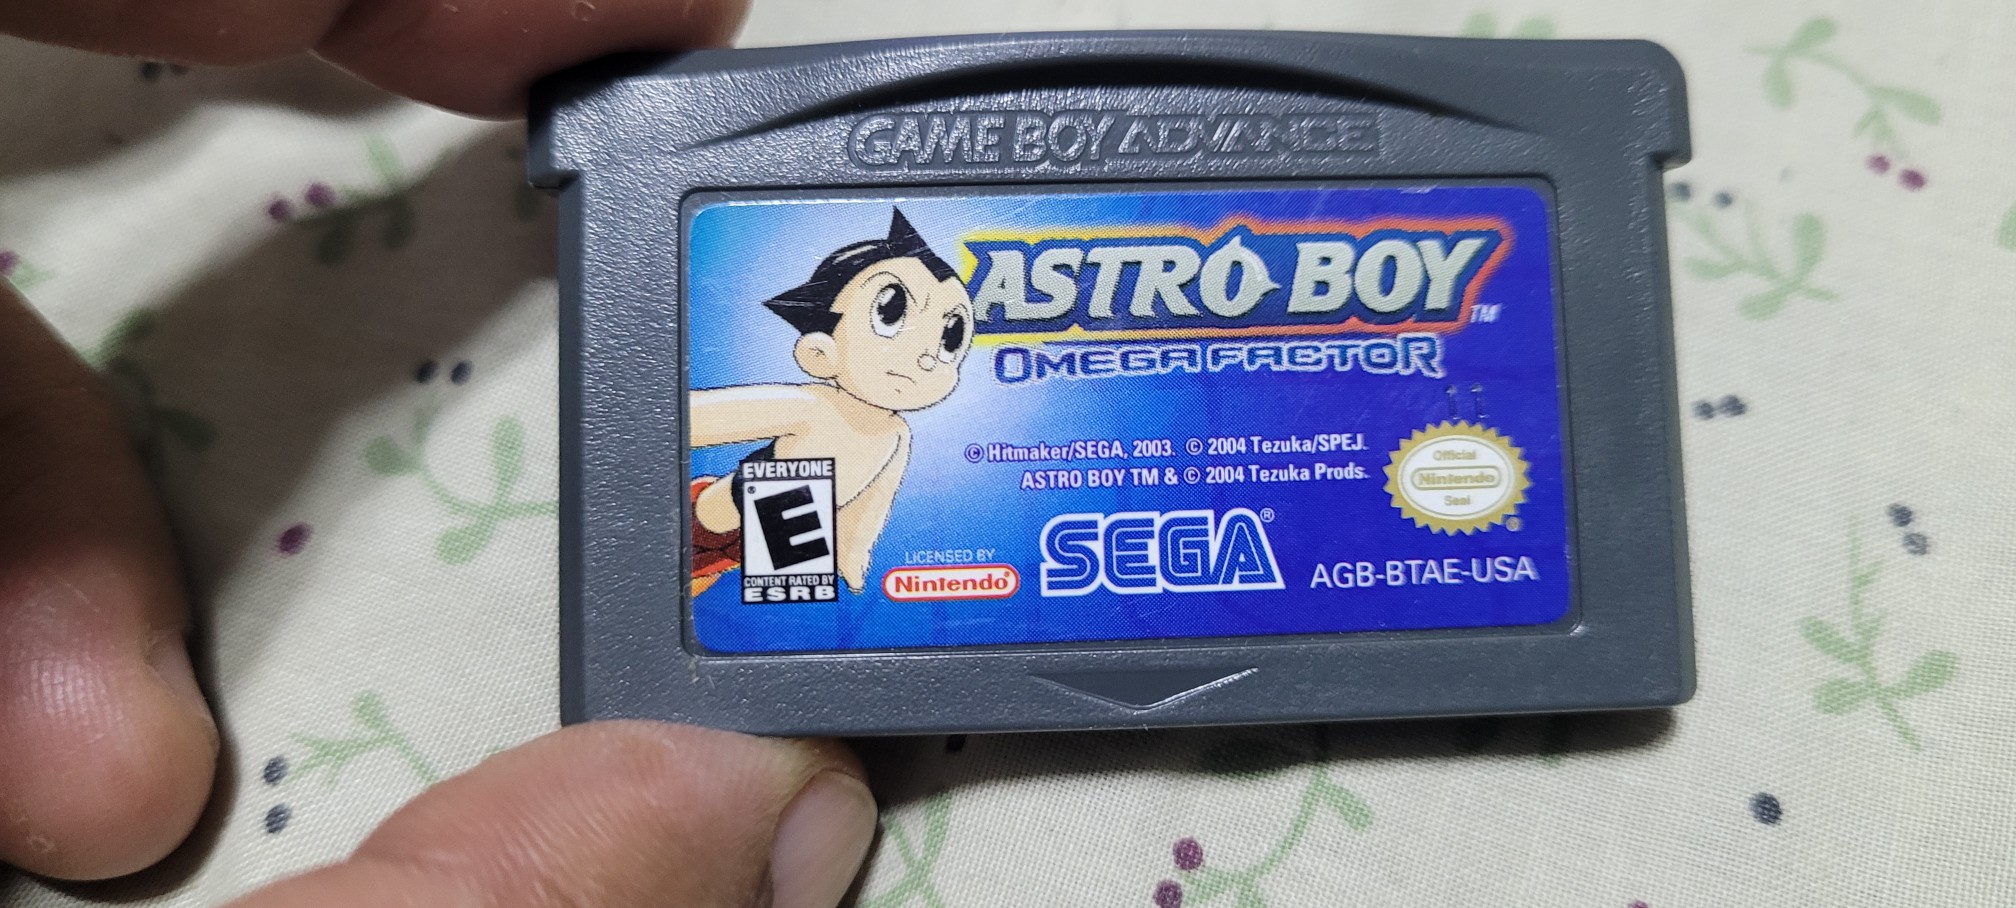 consolas y videojuegos - Gba astro boy original